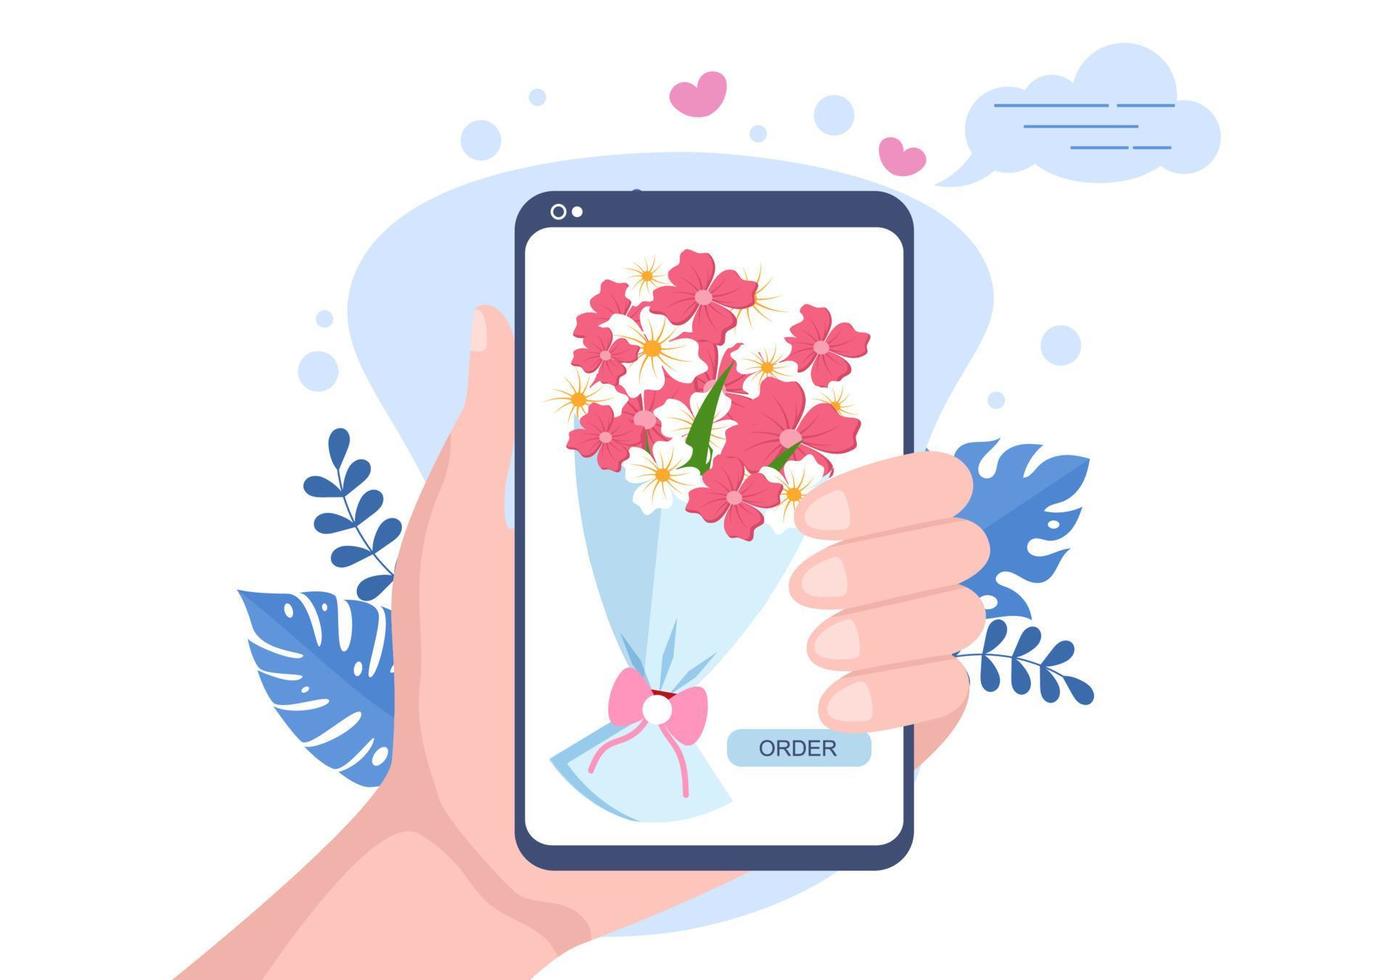 servizio di consegna di fiori attività online con corriere in possesso di un bouquet di fiori utilizzando camion, auto o moto. illustrazione vettoriale di sfondo